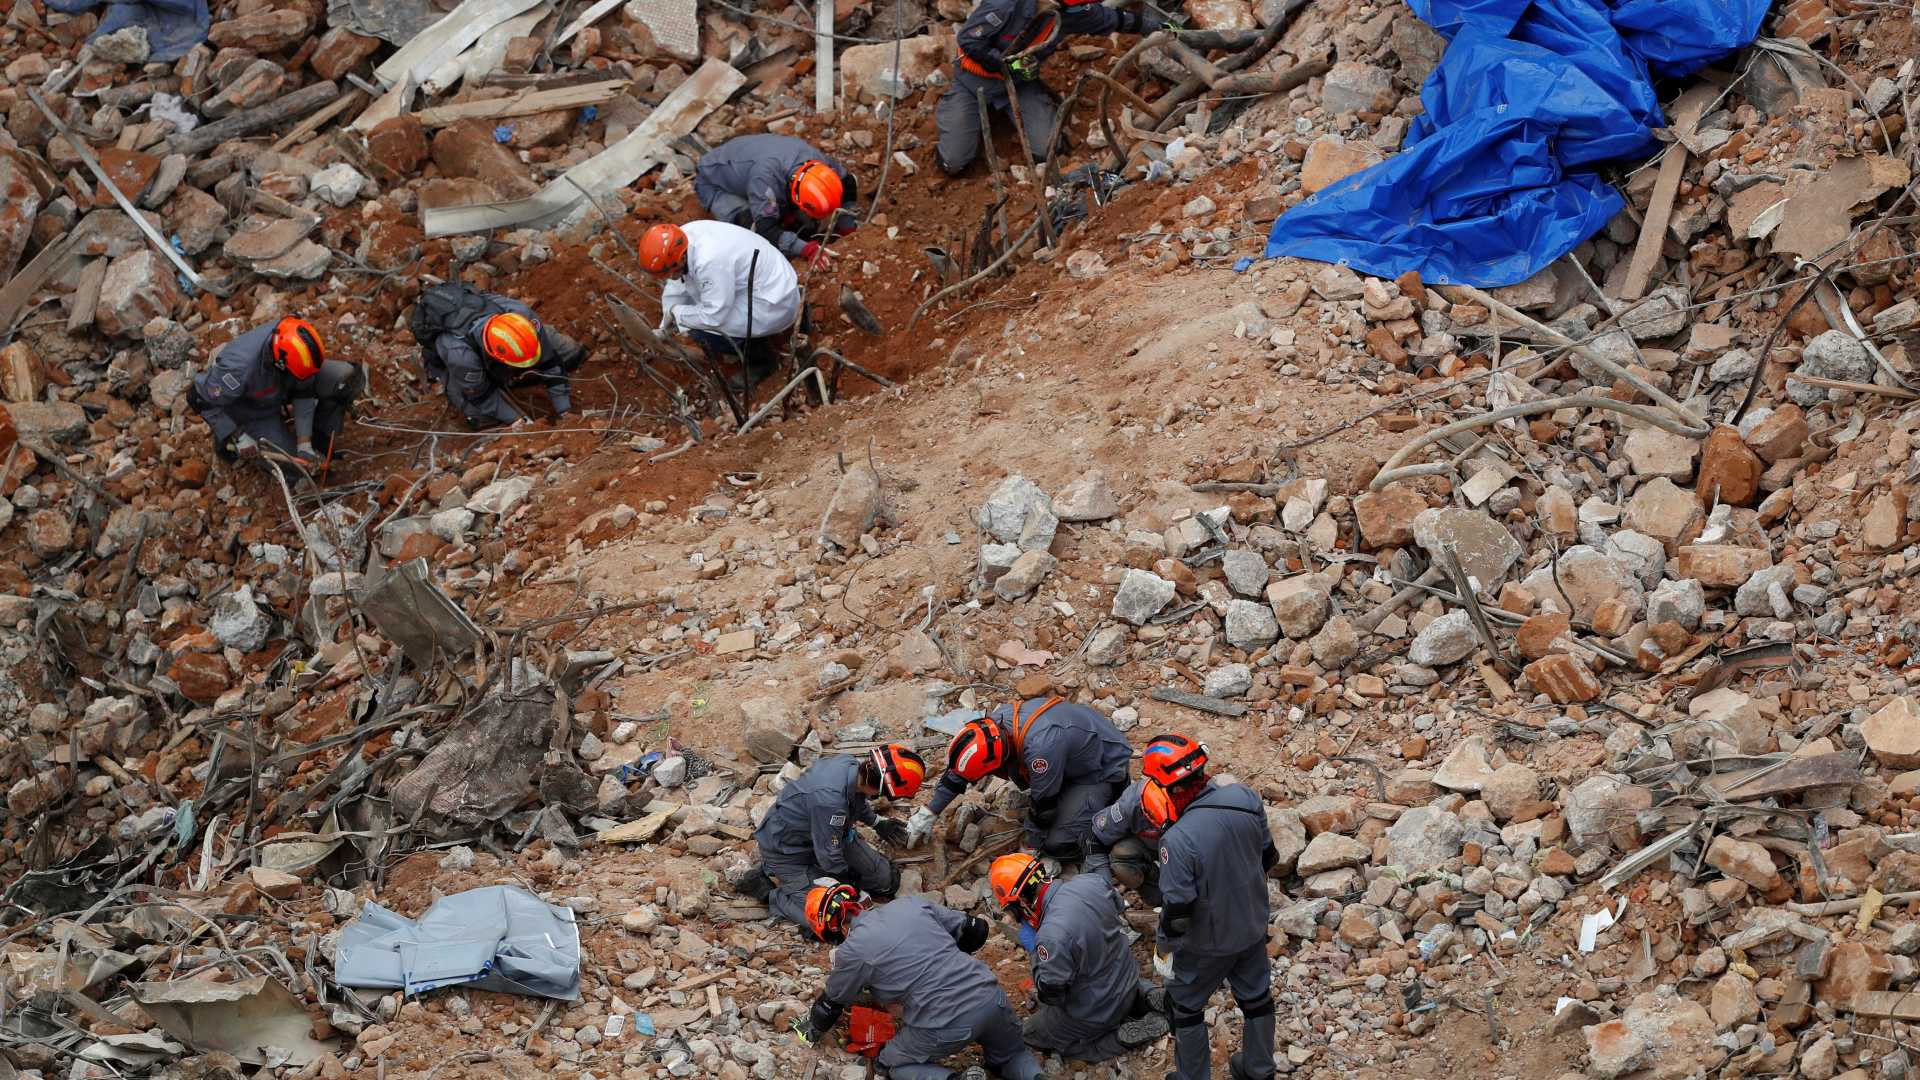 Bombeiros encontram novos restos mortais nos escombros de prédio em São Paulo